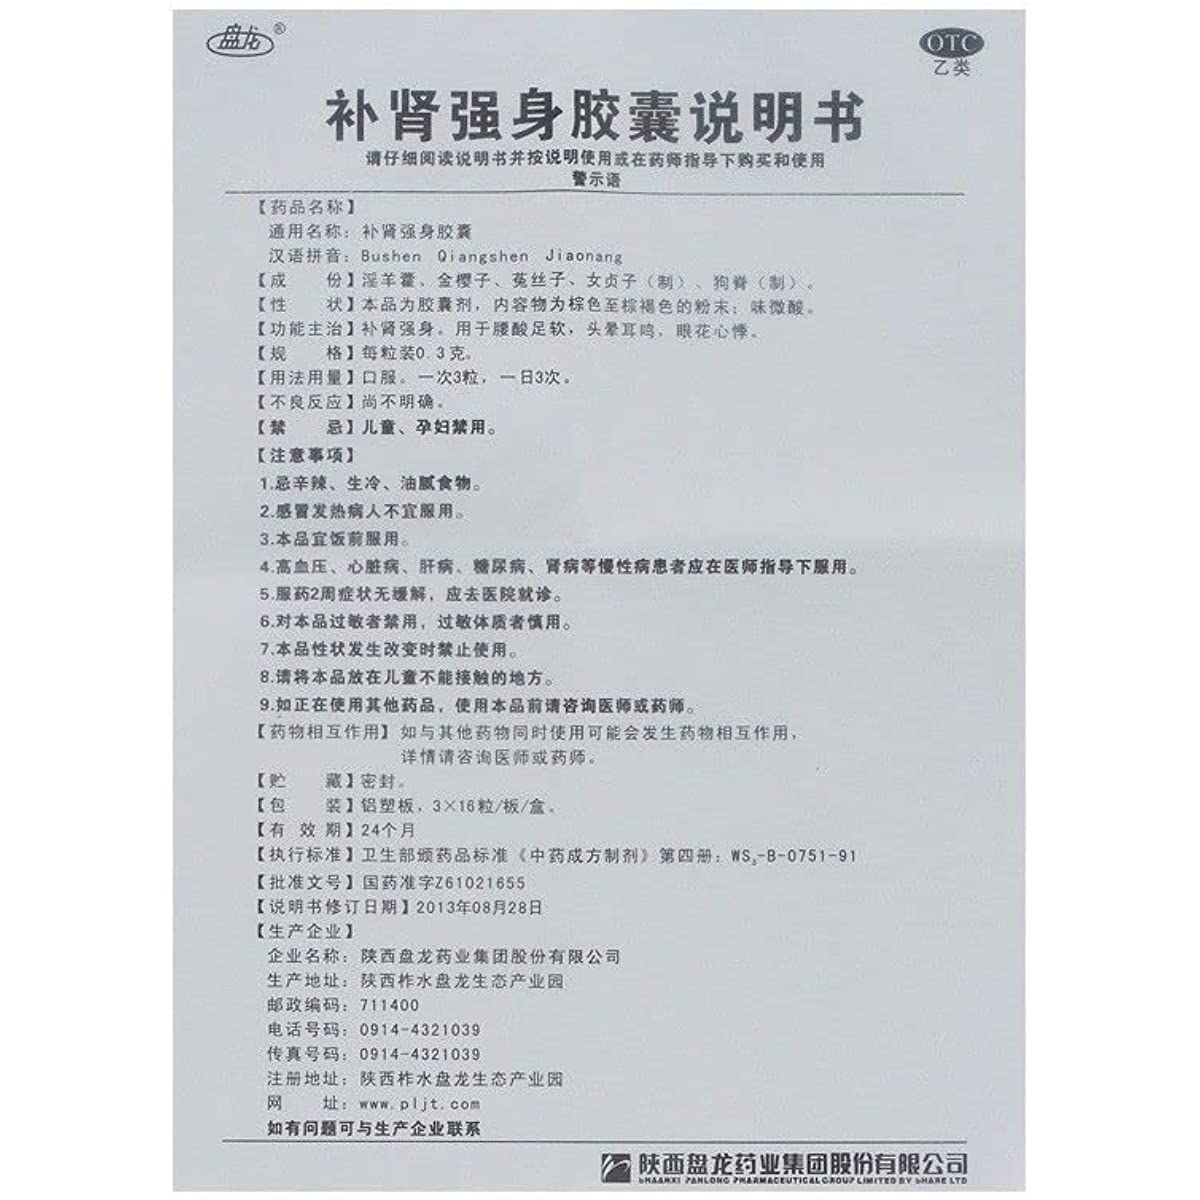 1 Box, Bushen Qiangshen Jiaonang 48 Capsules / Box 补肾强身胶囊